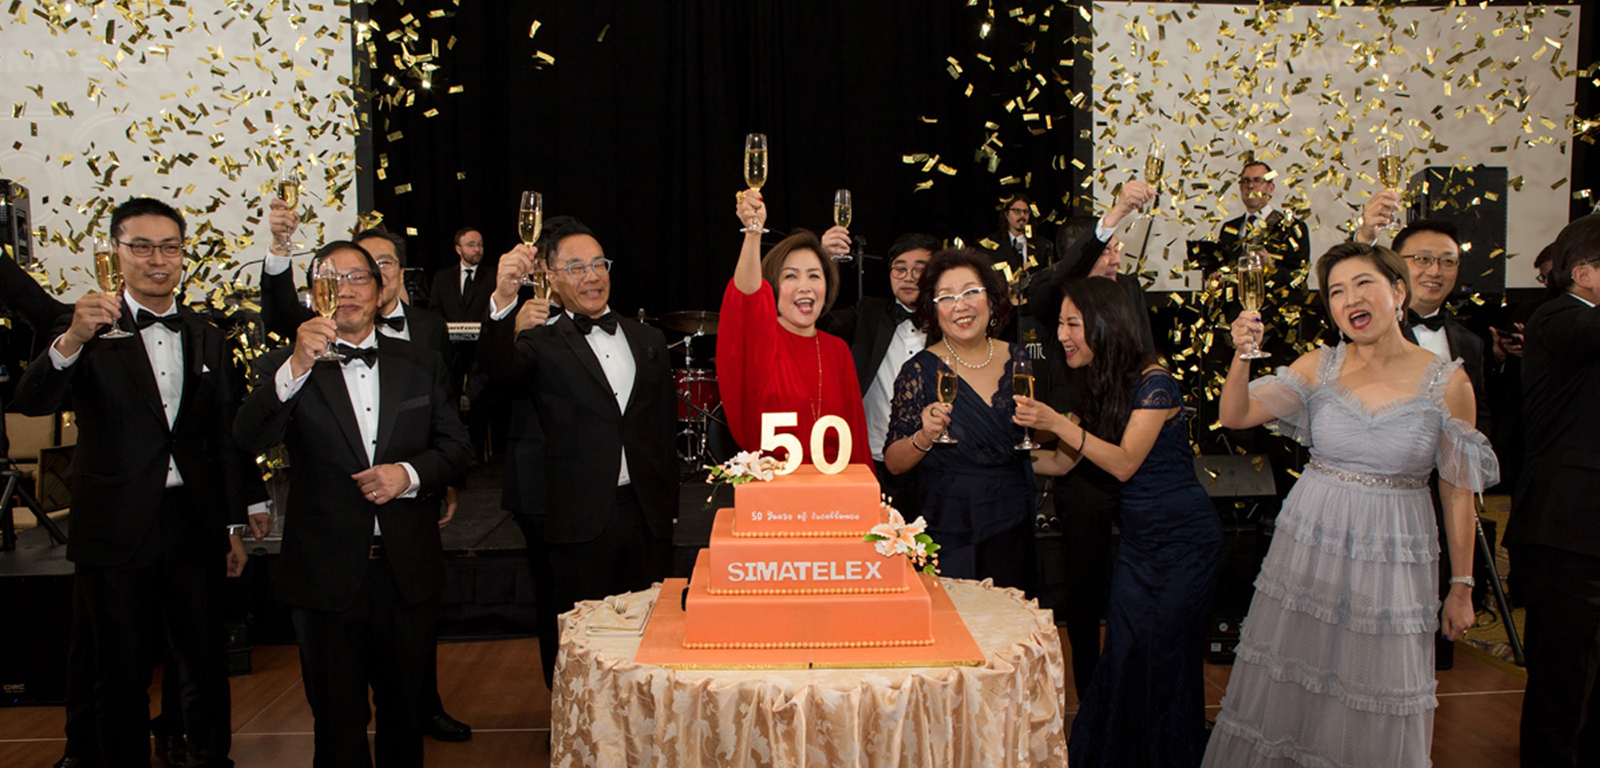 Simatelex celebrates 50 years and a confetti drop.